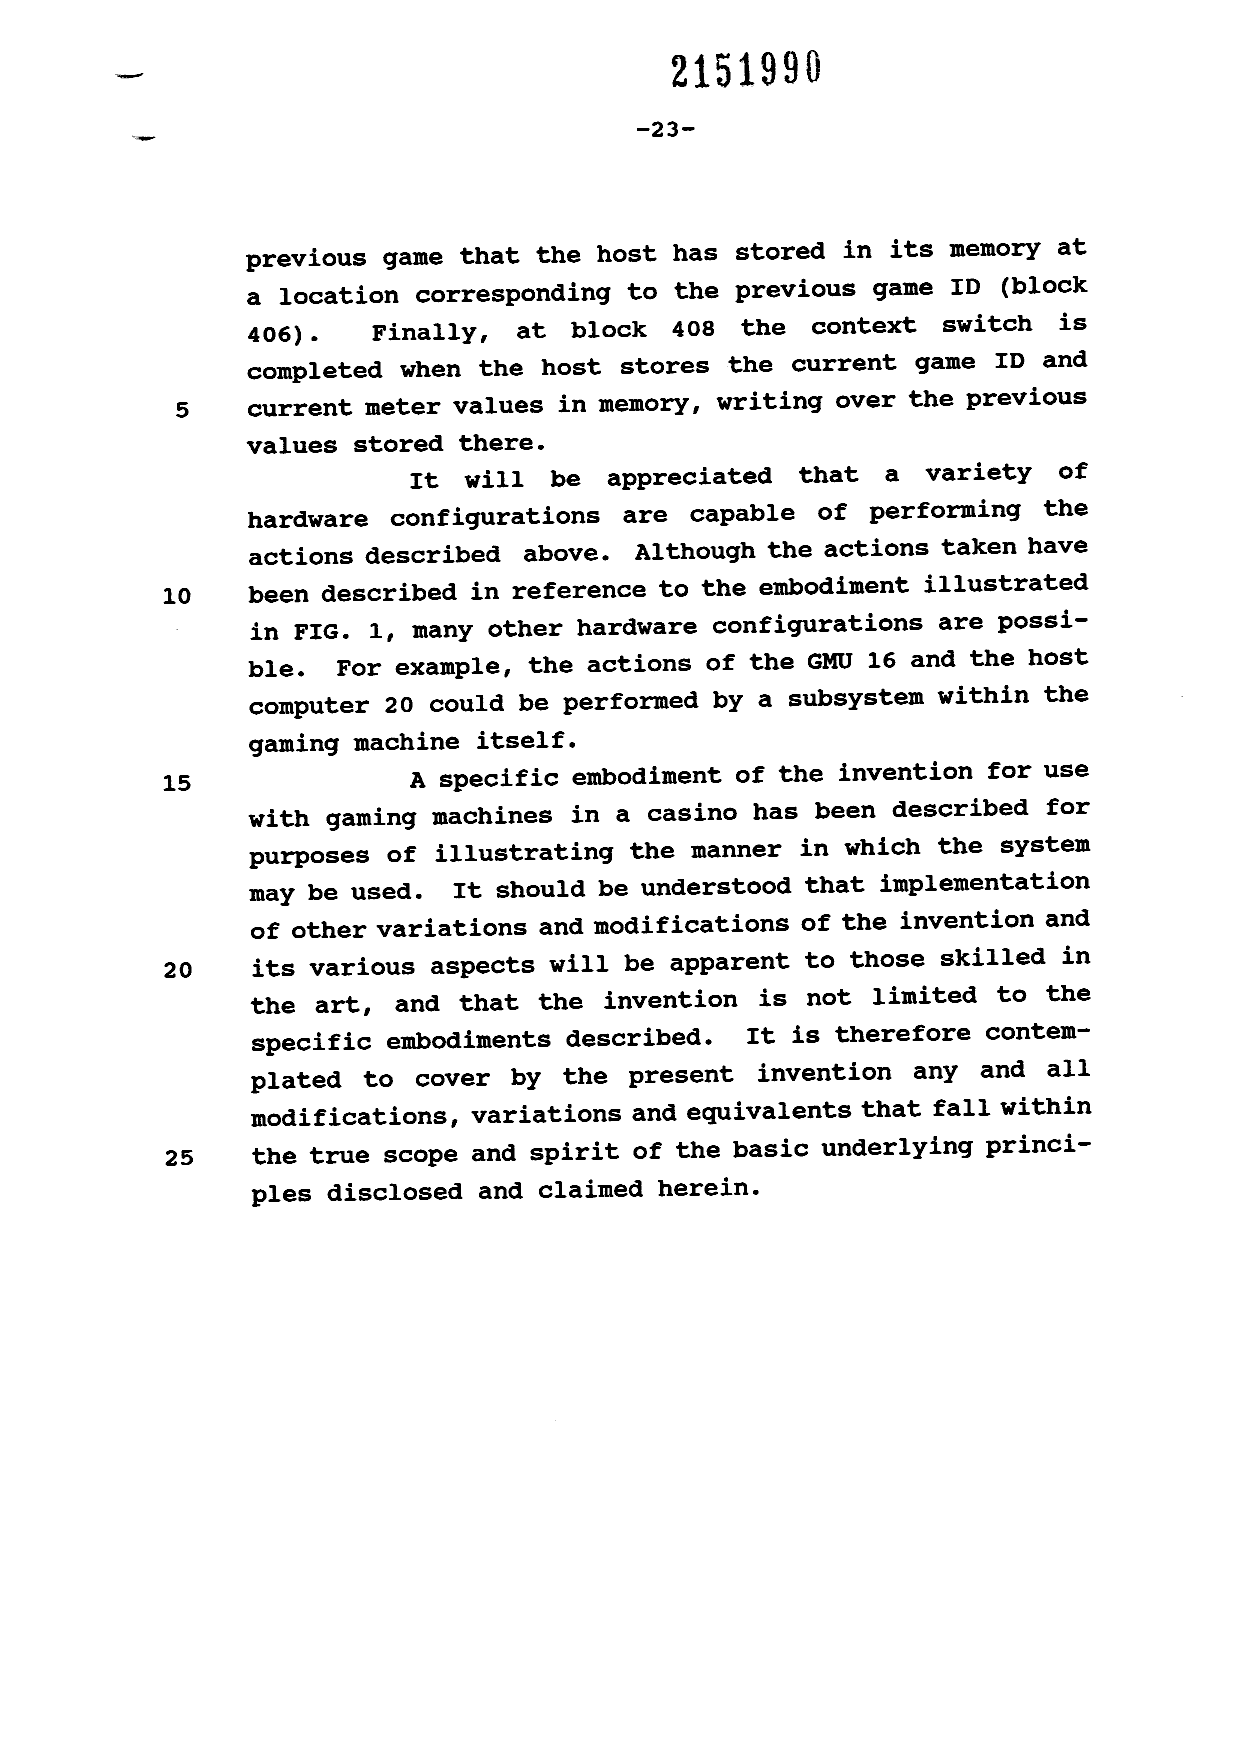 Canadian Patent Document 2151990. Description 19981001. Image 23 of 23